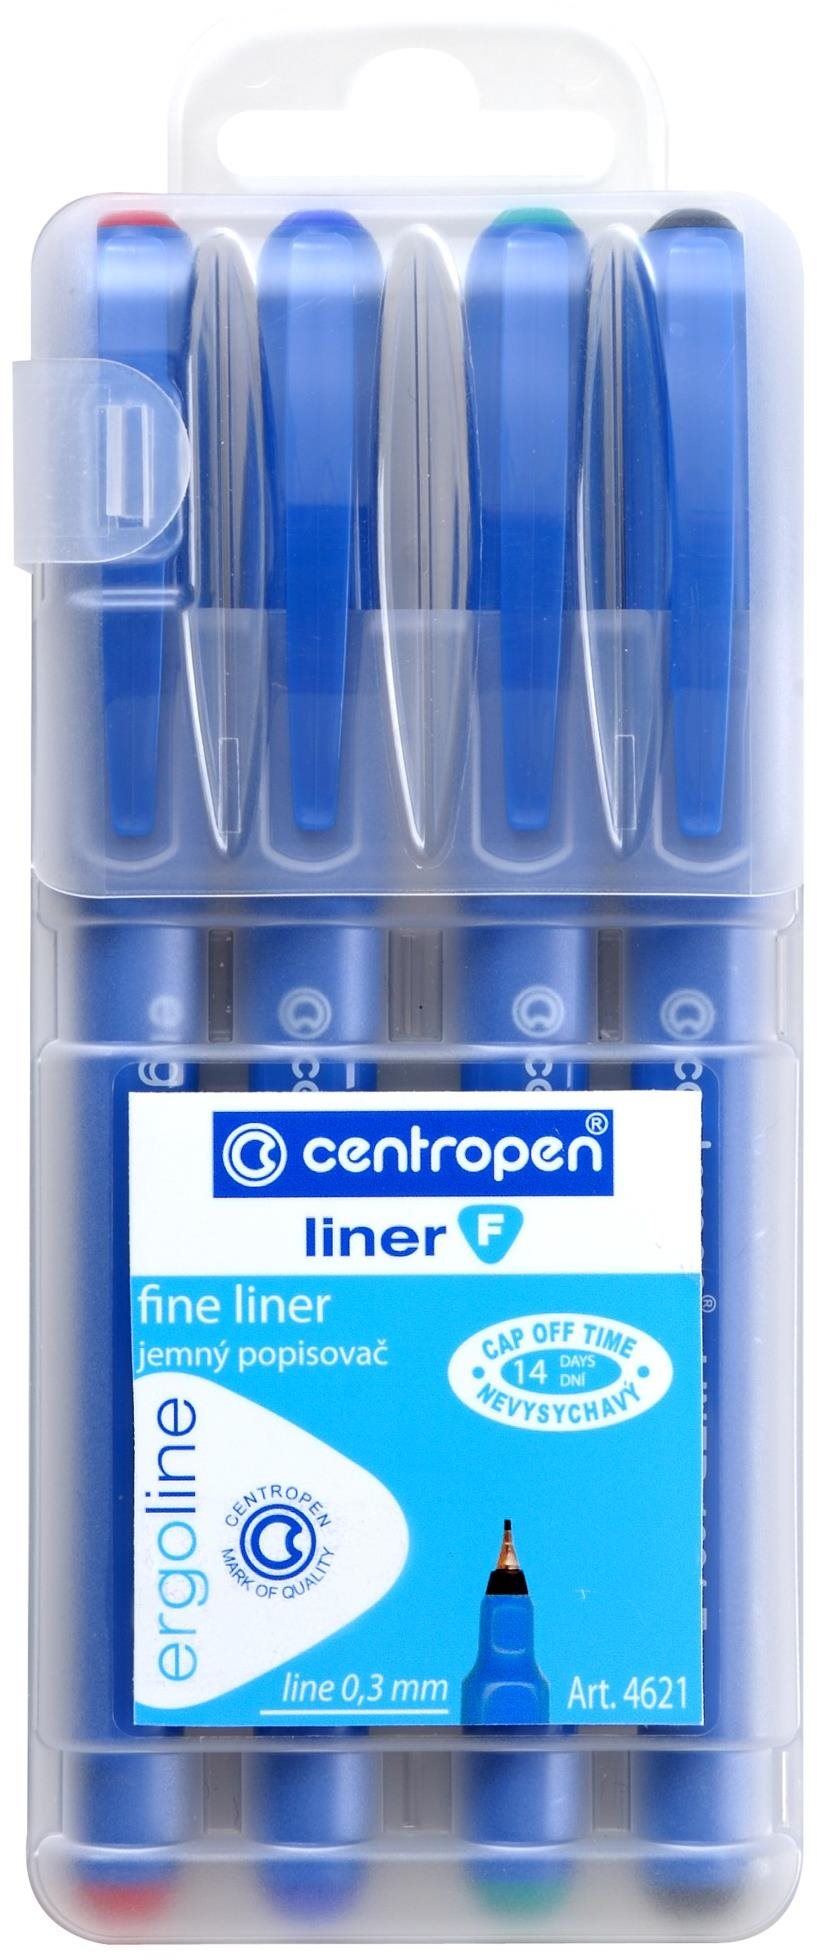 Liner Centropen liner 4621 4 ks